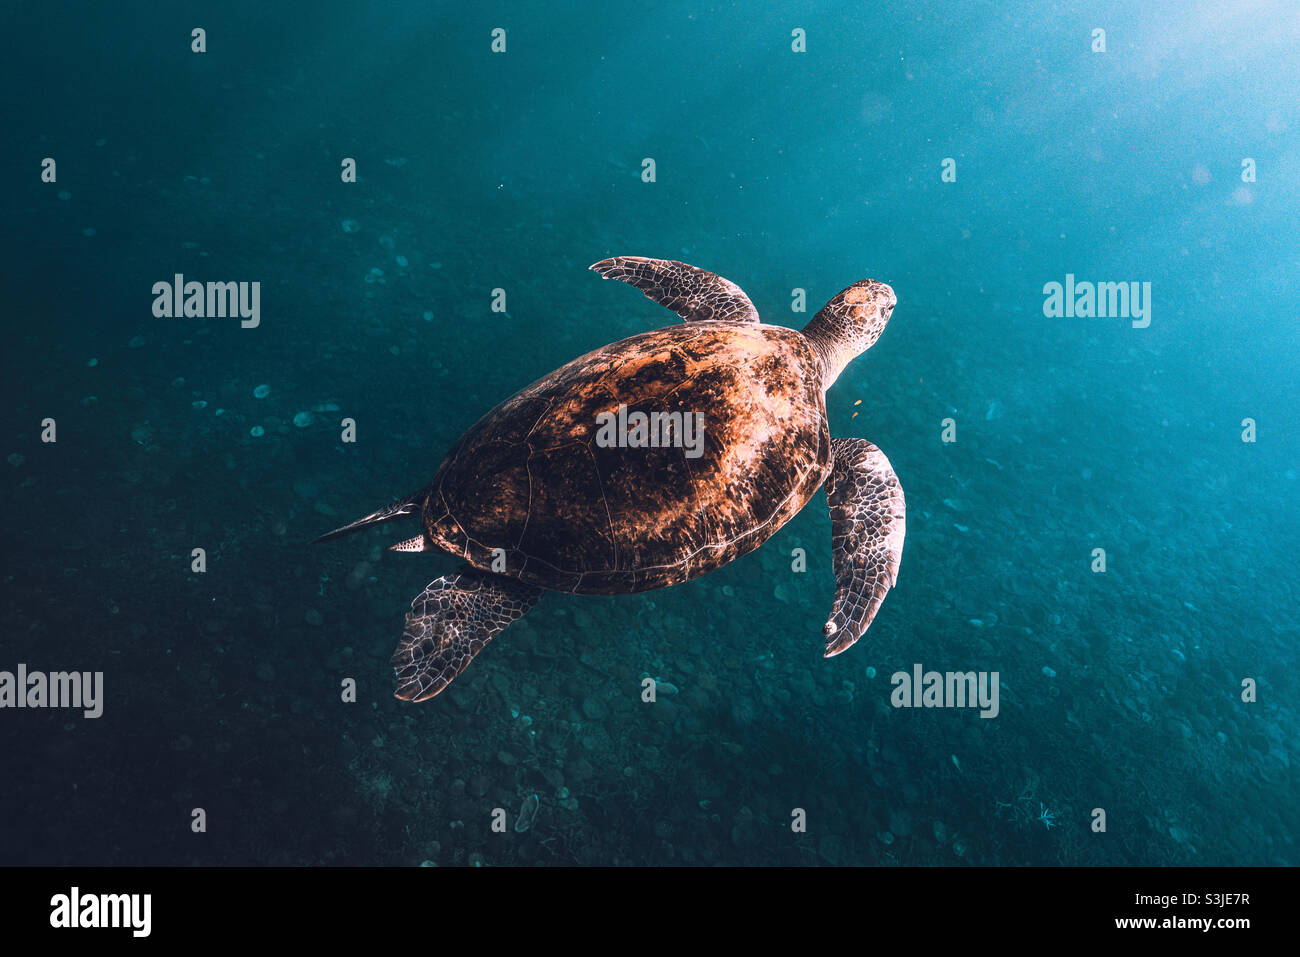 Grüne Schildkröte unter Wasser in blauem Wasser und klarem Meer Stockfoto